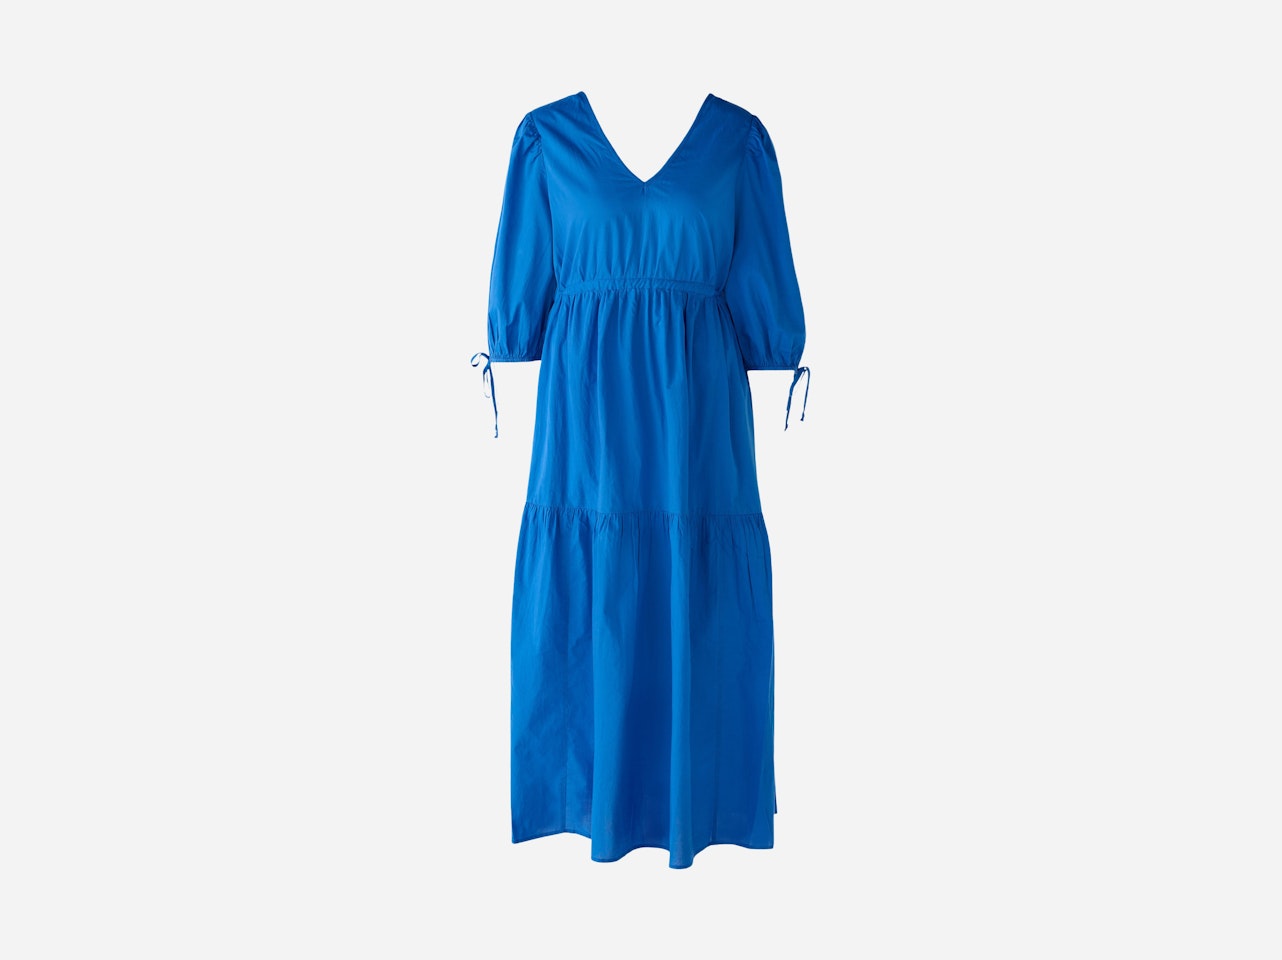 Bild 1 von Maxi dress cotton voile in blue lolite | Oui